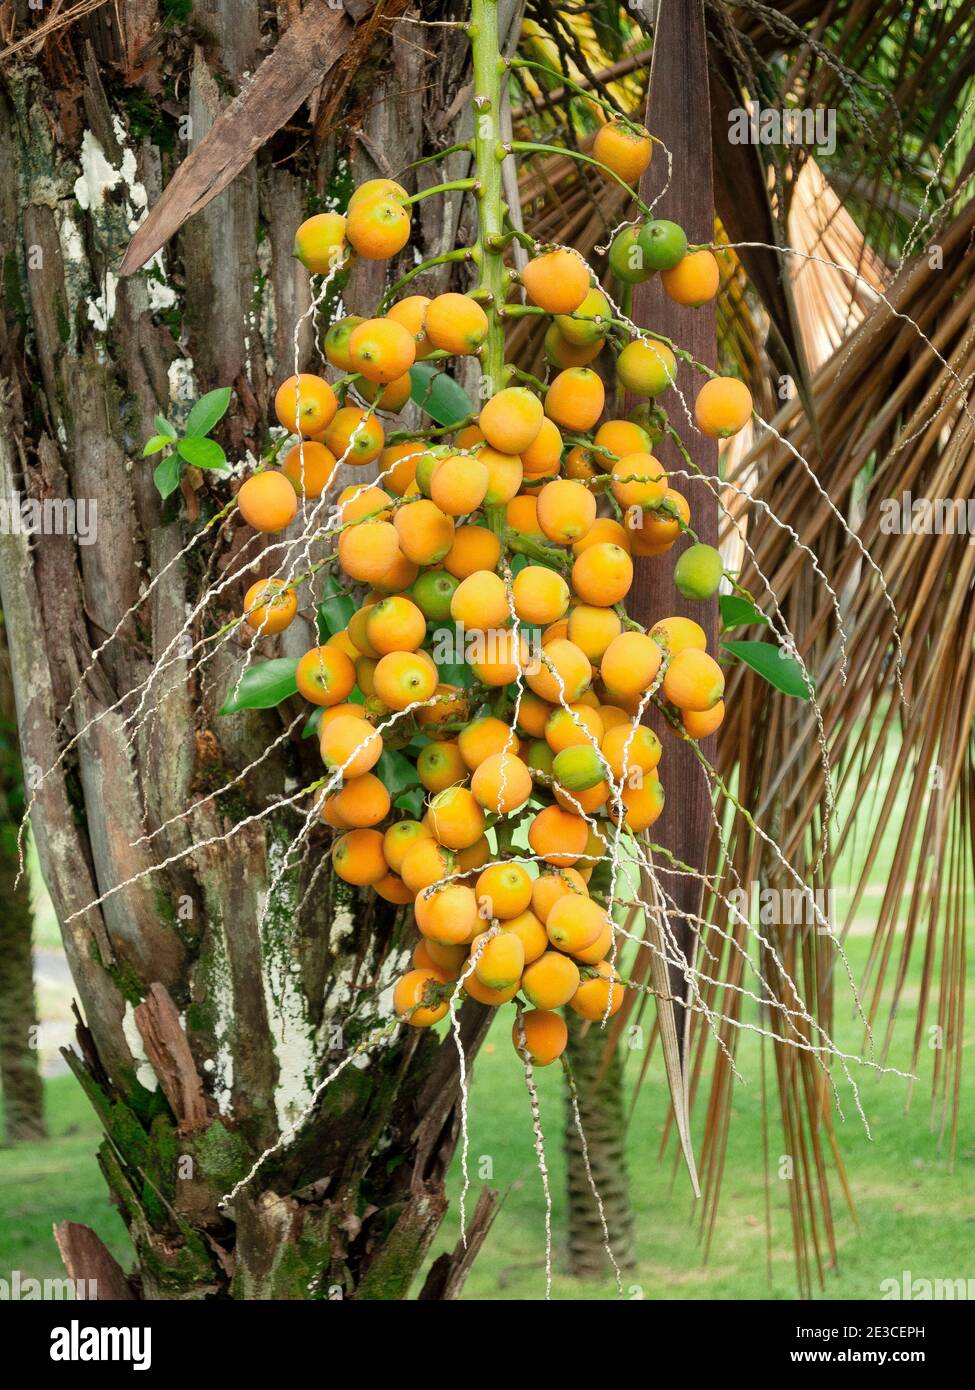 Fruits of the Butia palm in Rio de Janeiro Stock Photo